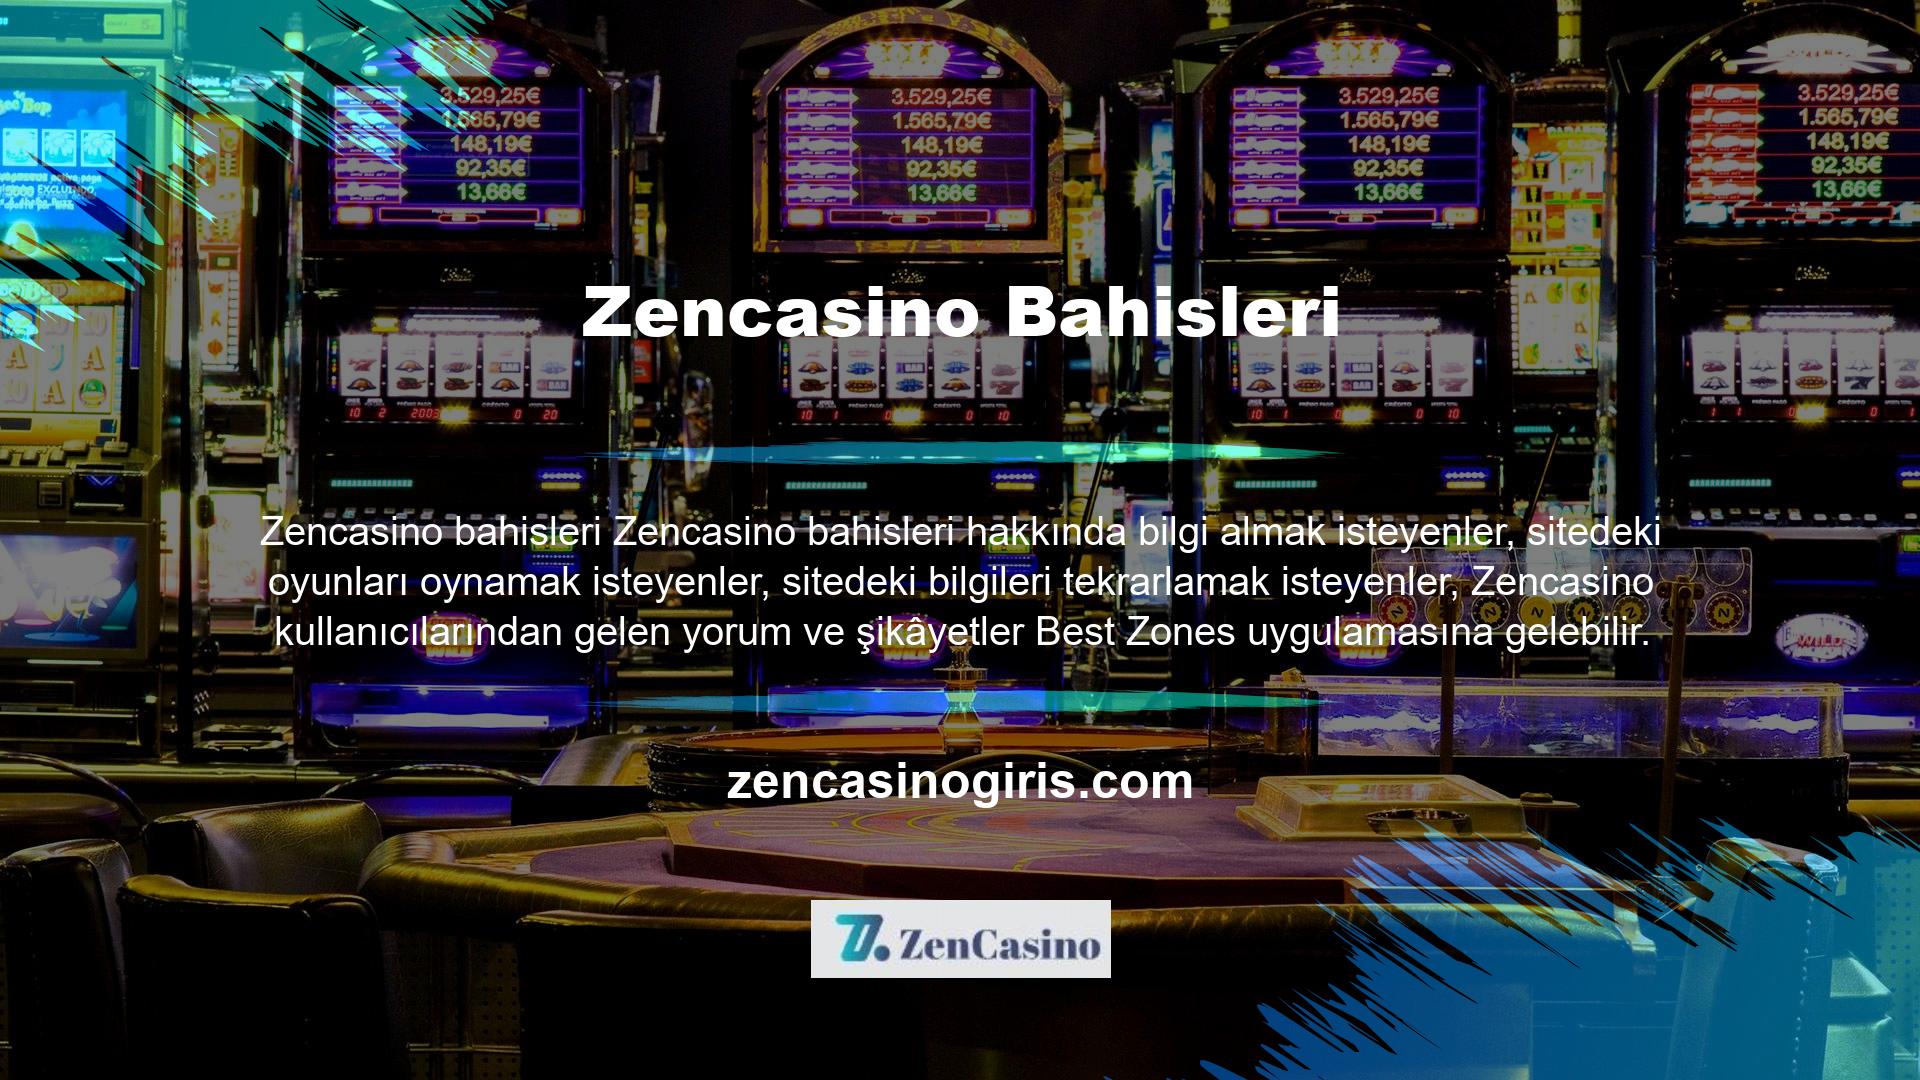 Zencasino sitesi dışında site hakkında yorum veya şikâyet yayınlamak için kullanılabilecek forumlar bulunmaktadır